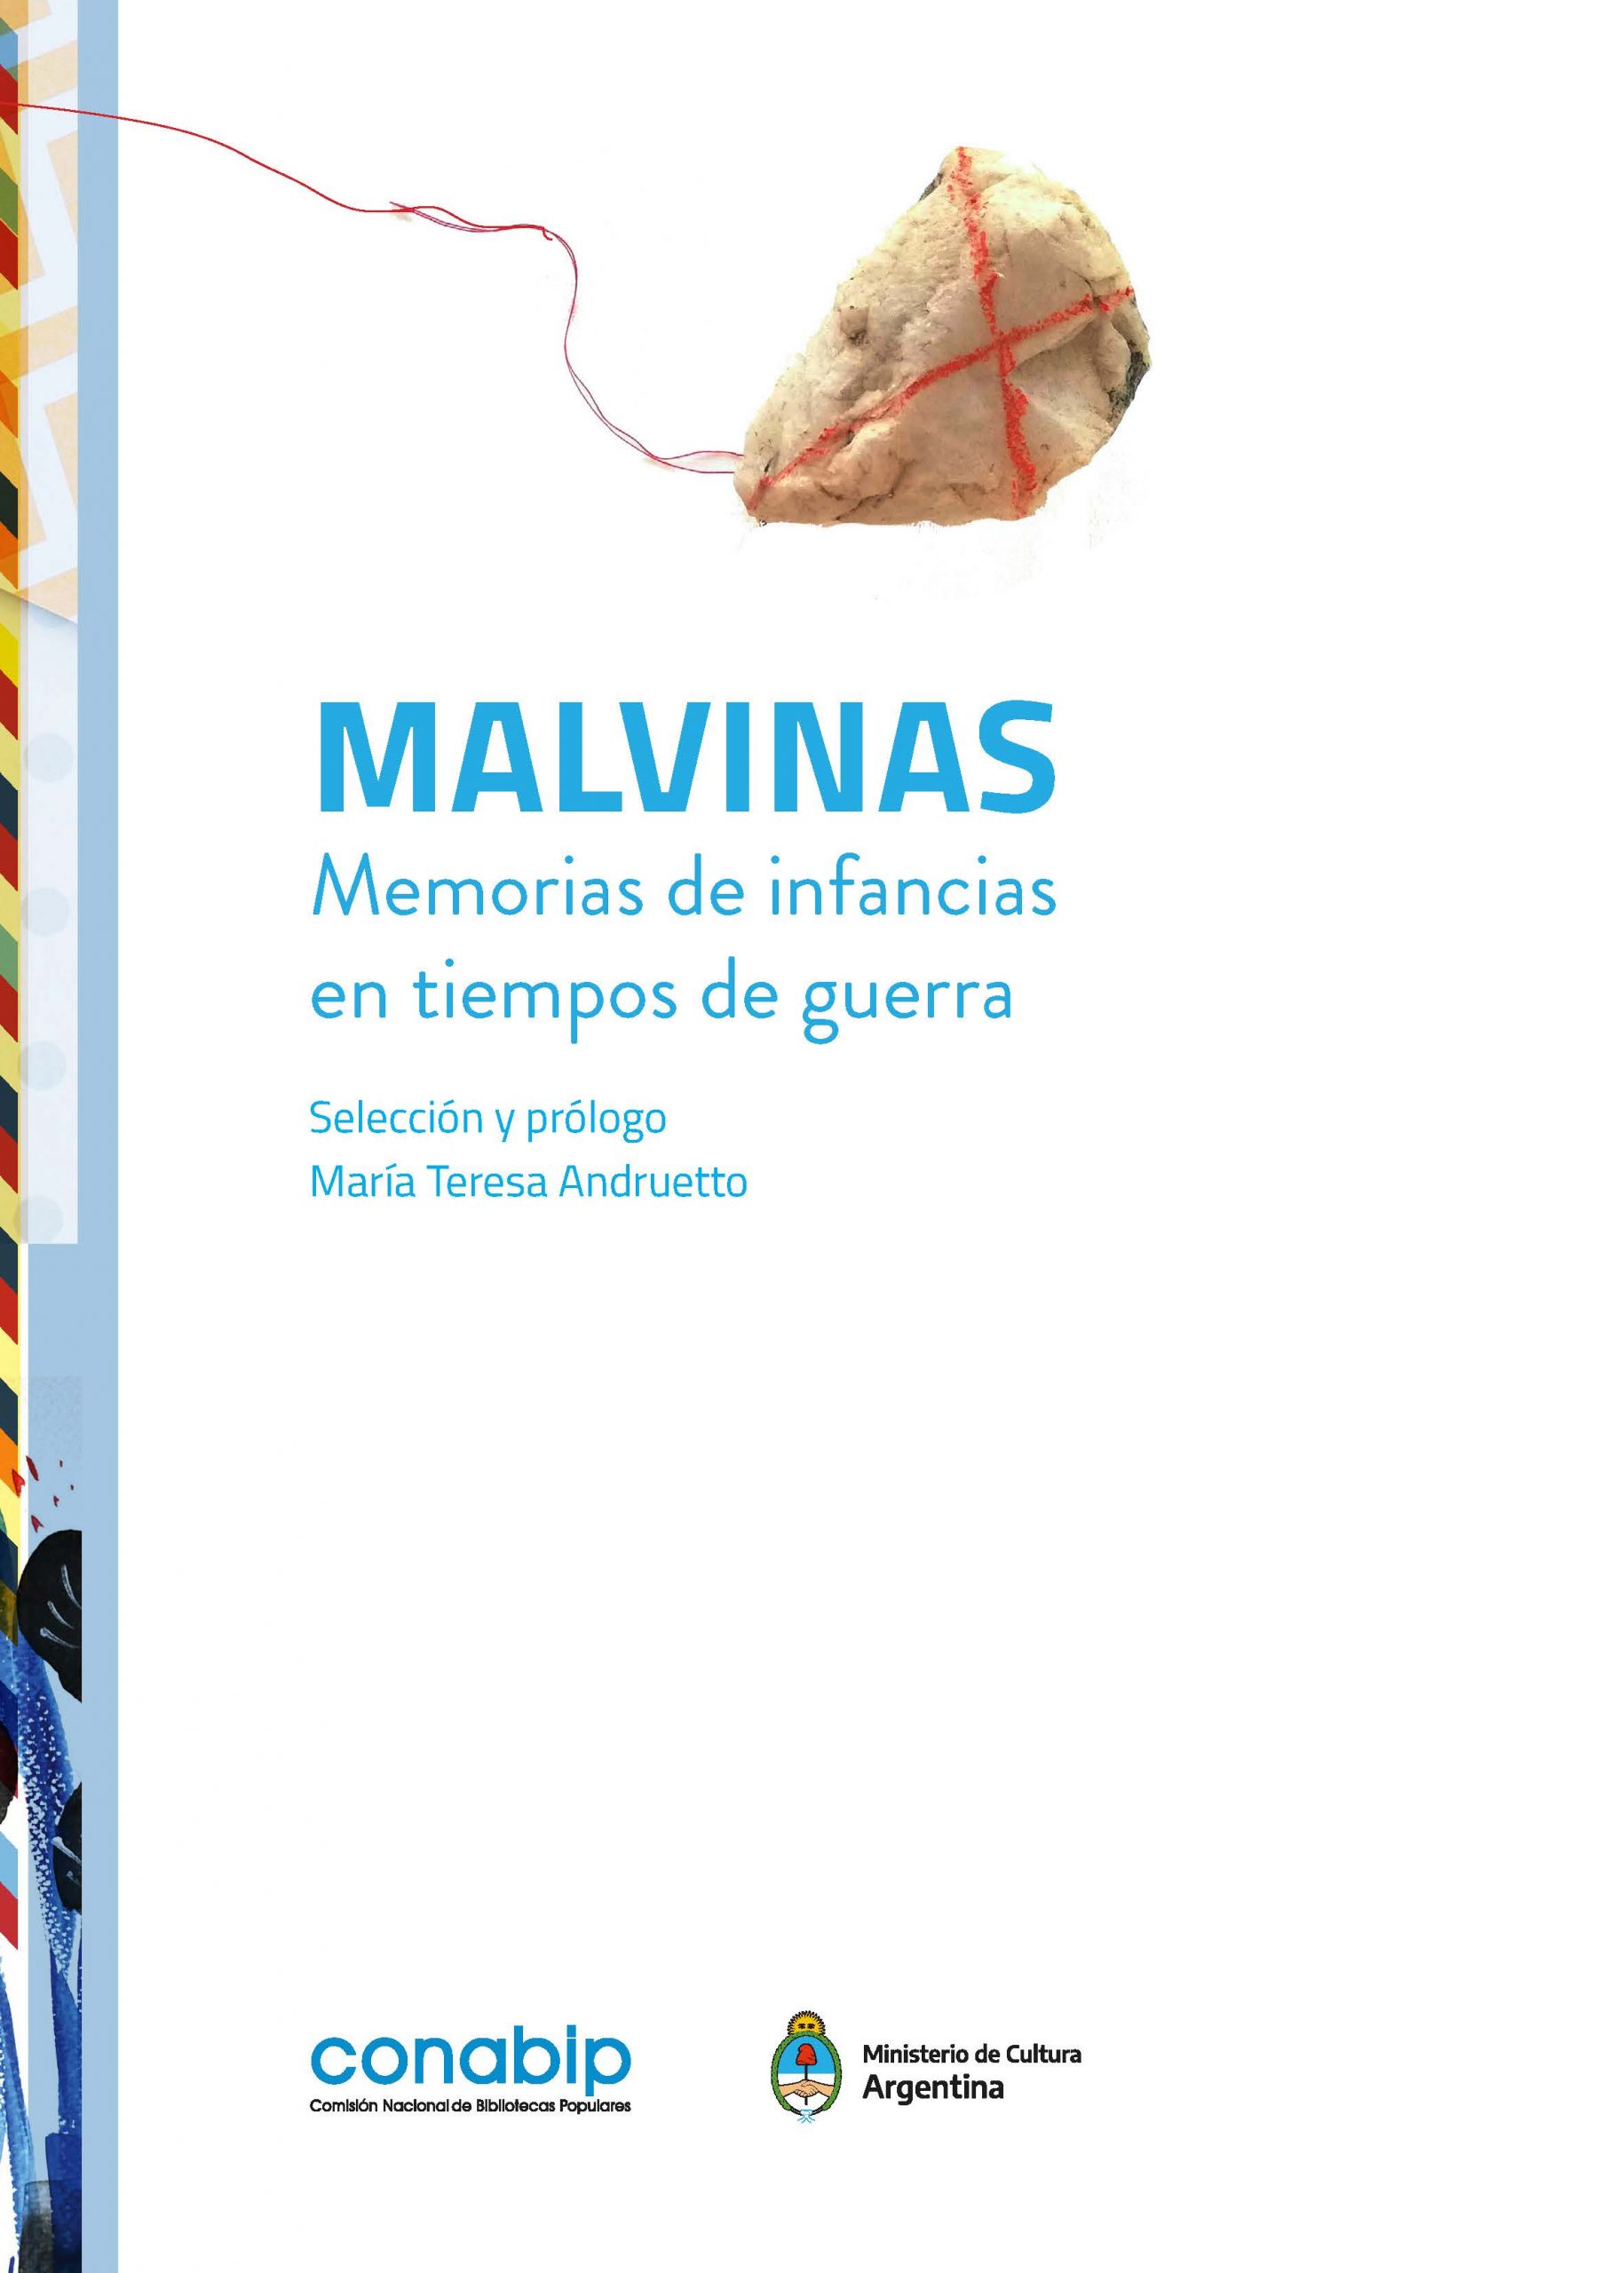 Malvinas. Memorias de infancias en tiempos de guerra_CONABIP_Página_007